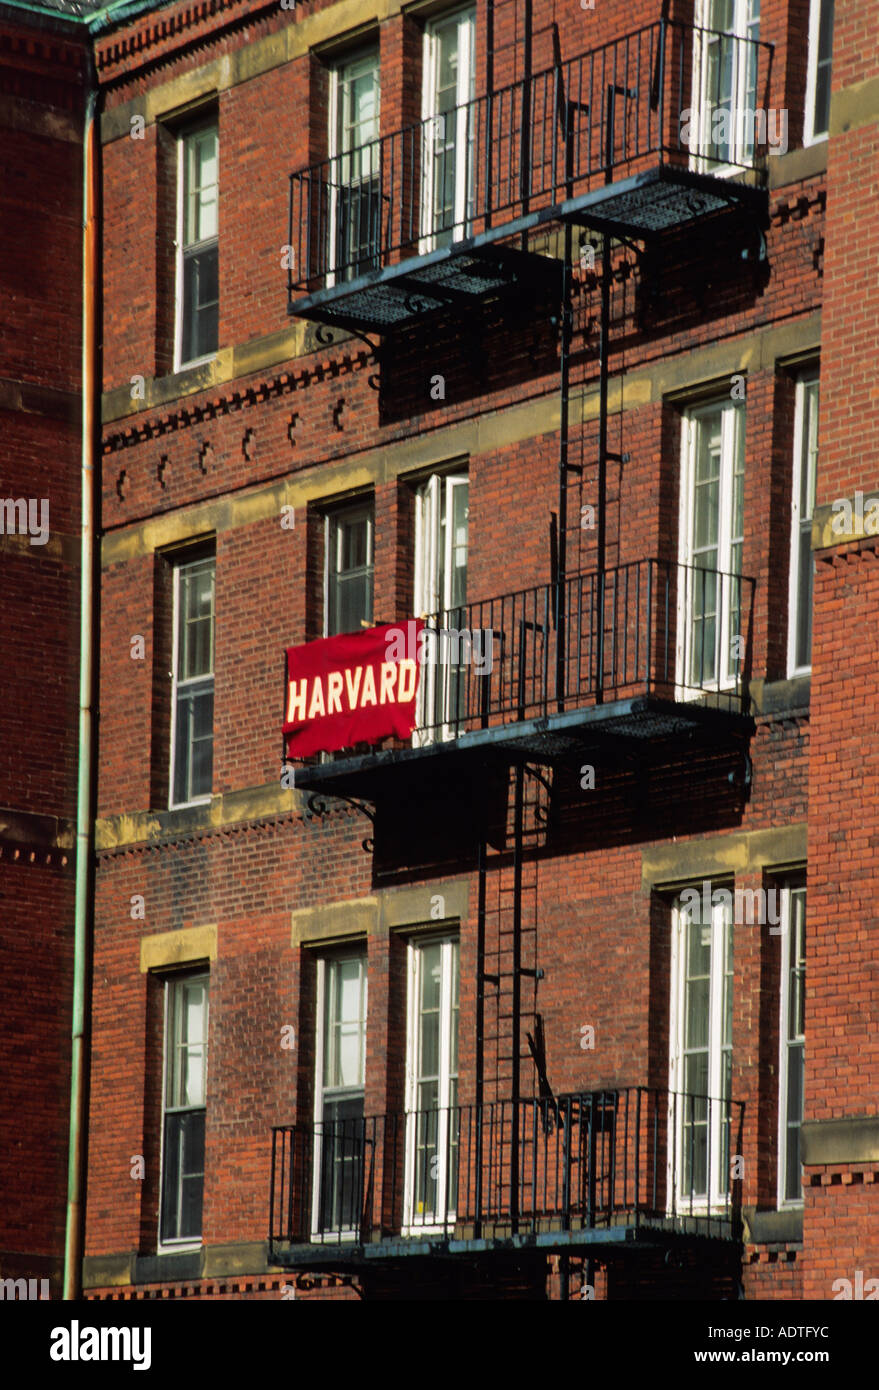 Dortoir de l'Université Harvard avec bannière de l'école Harvard. Façade extérieure du bâtiment à Cambridge Massachusetts USA. Ivy League College. Banque D'Images